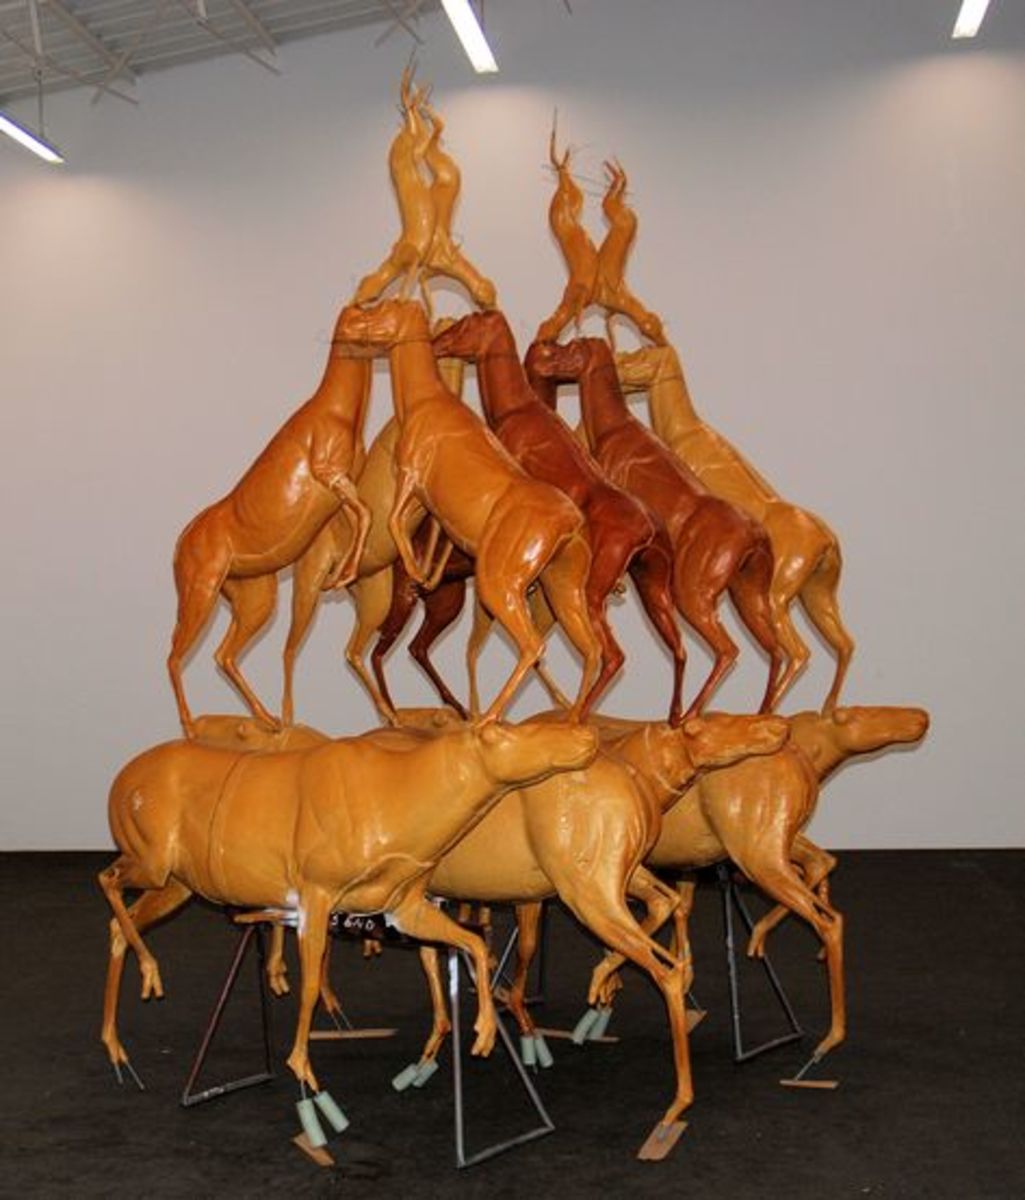 布鲁斯·瑙曼的《动物金字塔》